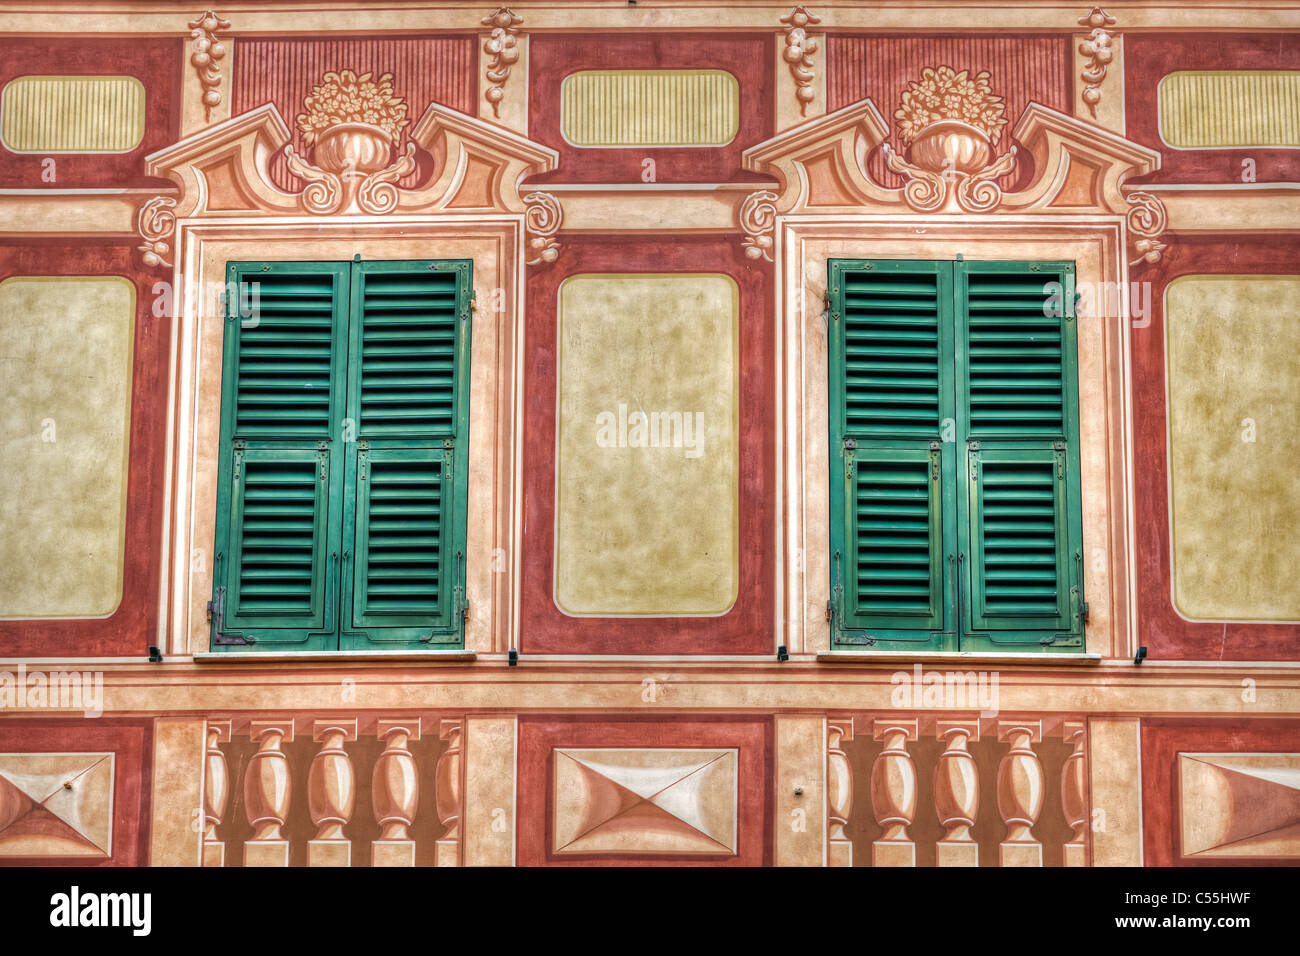 Camogli, eine alte Hafenstadt in Ligurien ist berühmt für seine bunten Häuser mit großen Fenstern Stockfoto